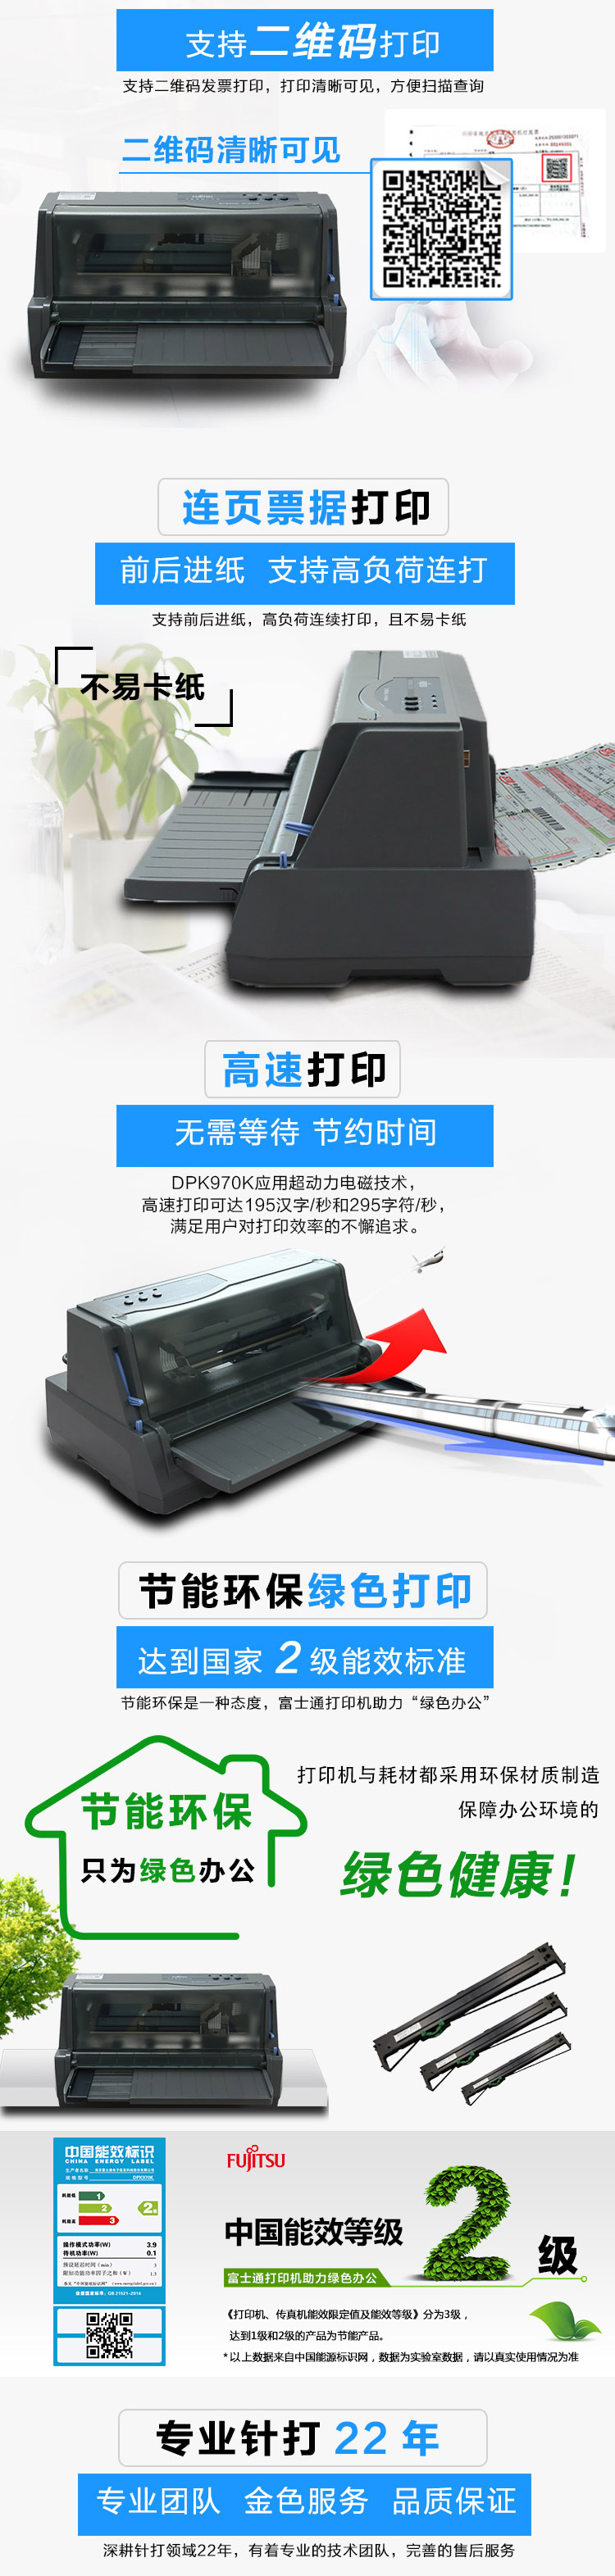 富士通(Fujitsu)DPK970K税票专用打印机